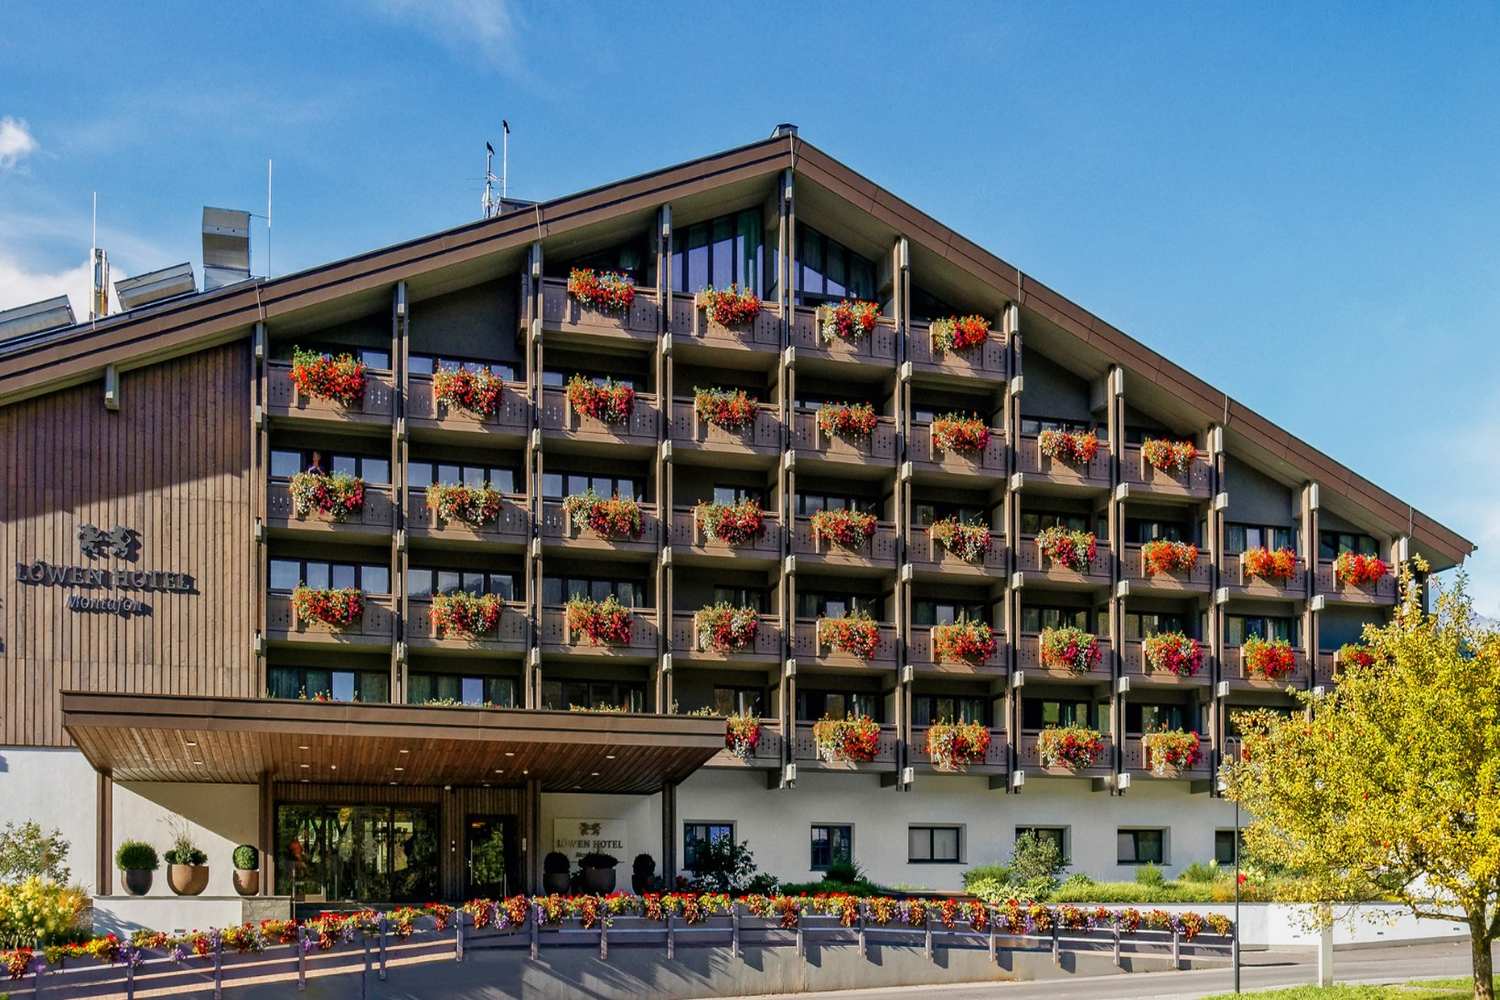 Löwen Hotel Montafon Schruns, Vorarlberg - Austria